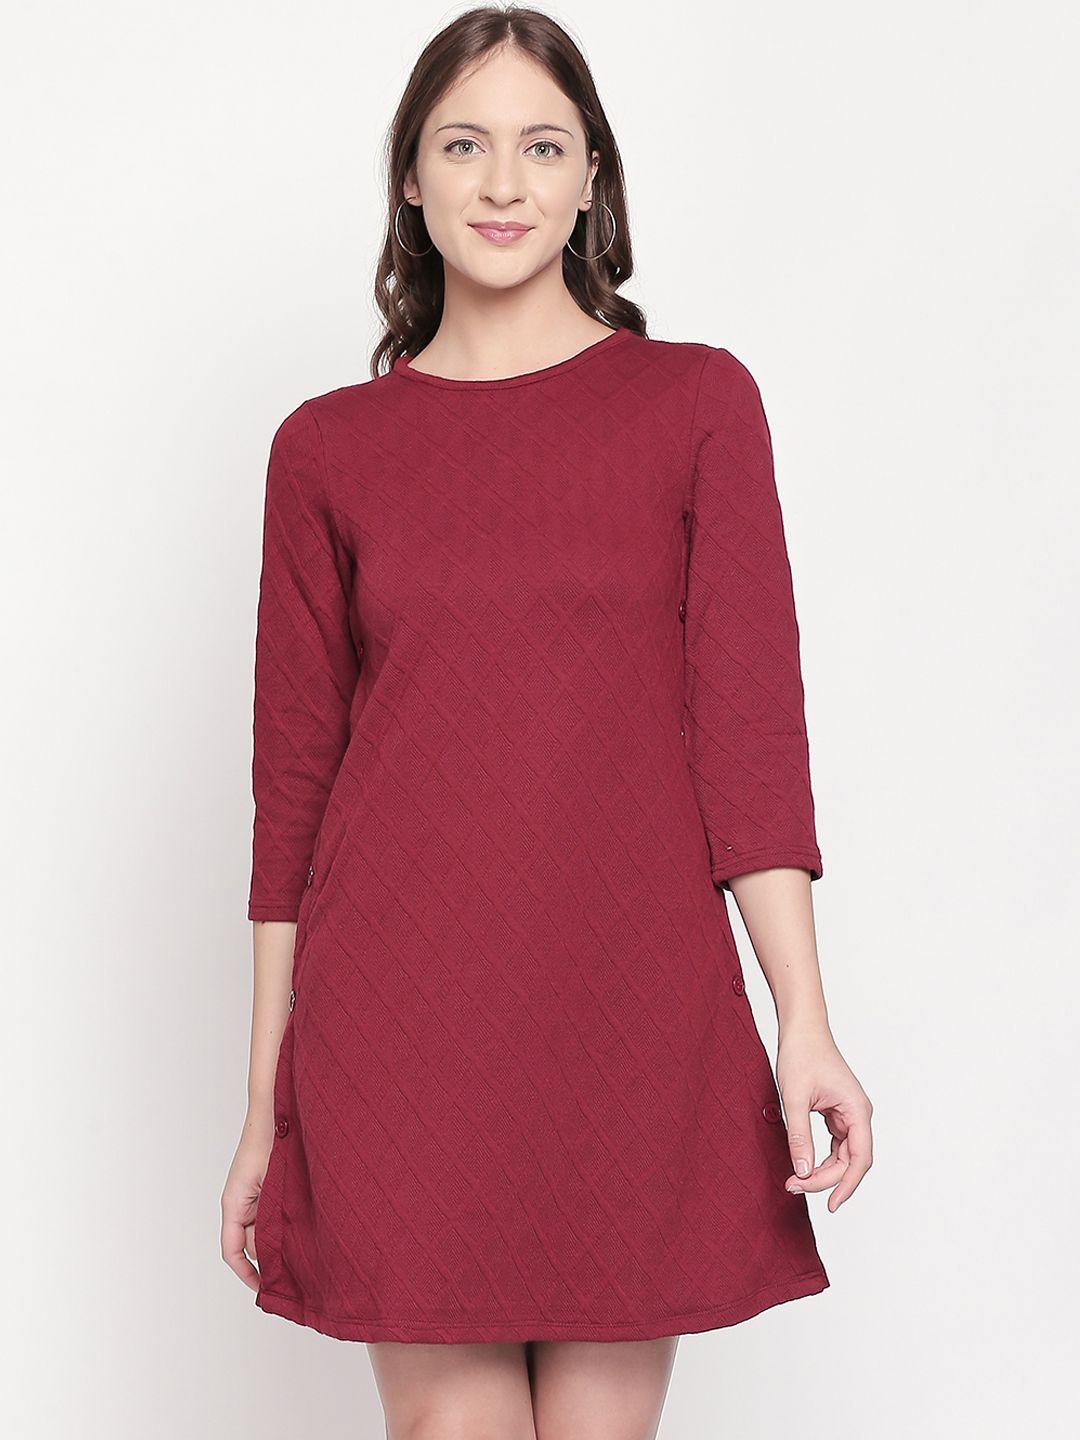 109f-women-red-self-design-t-shirt-dress